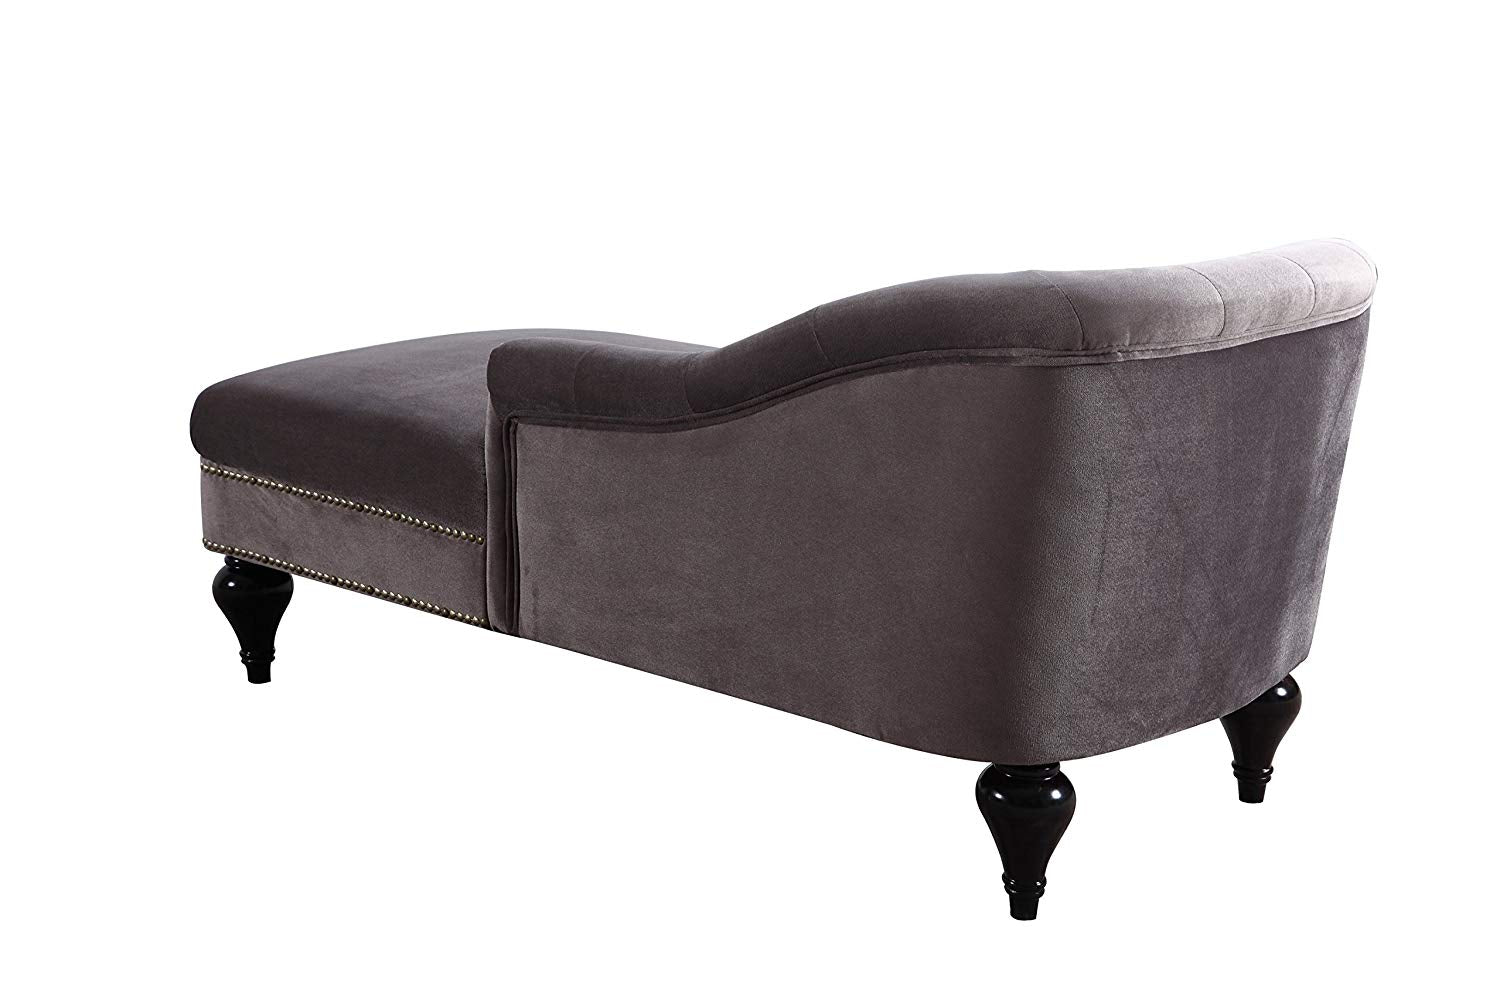 DIVANO ROMA FURNITURE Modern and Elegant Kid's Velvet Chaise Lounge for Living Room or Bedroom (Light Grey)